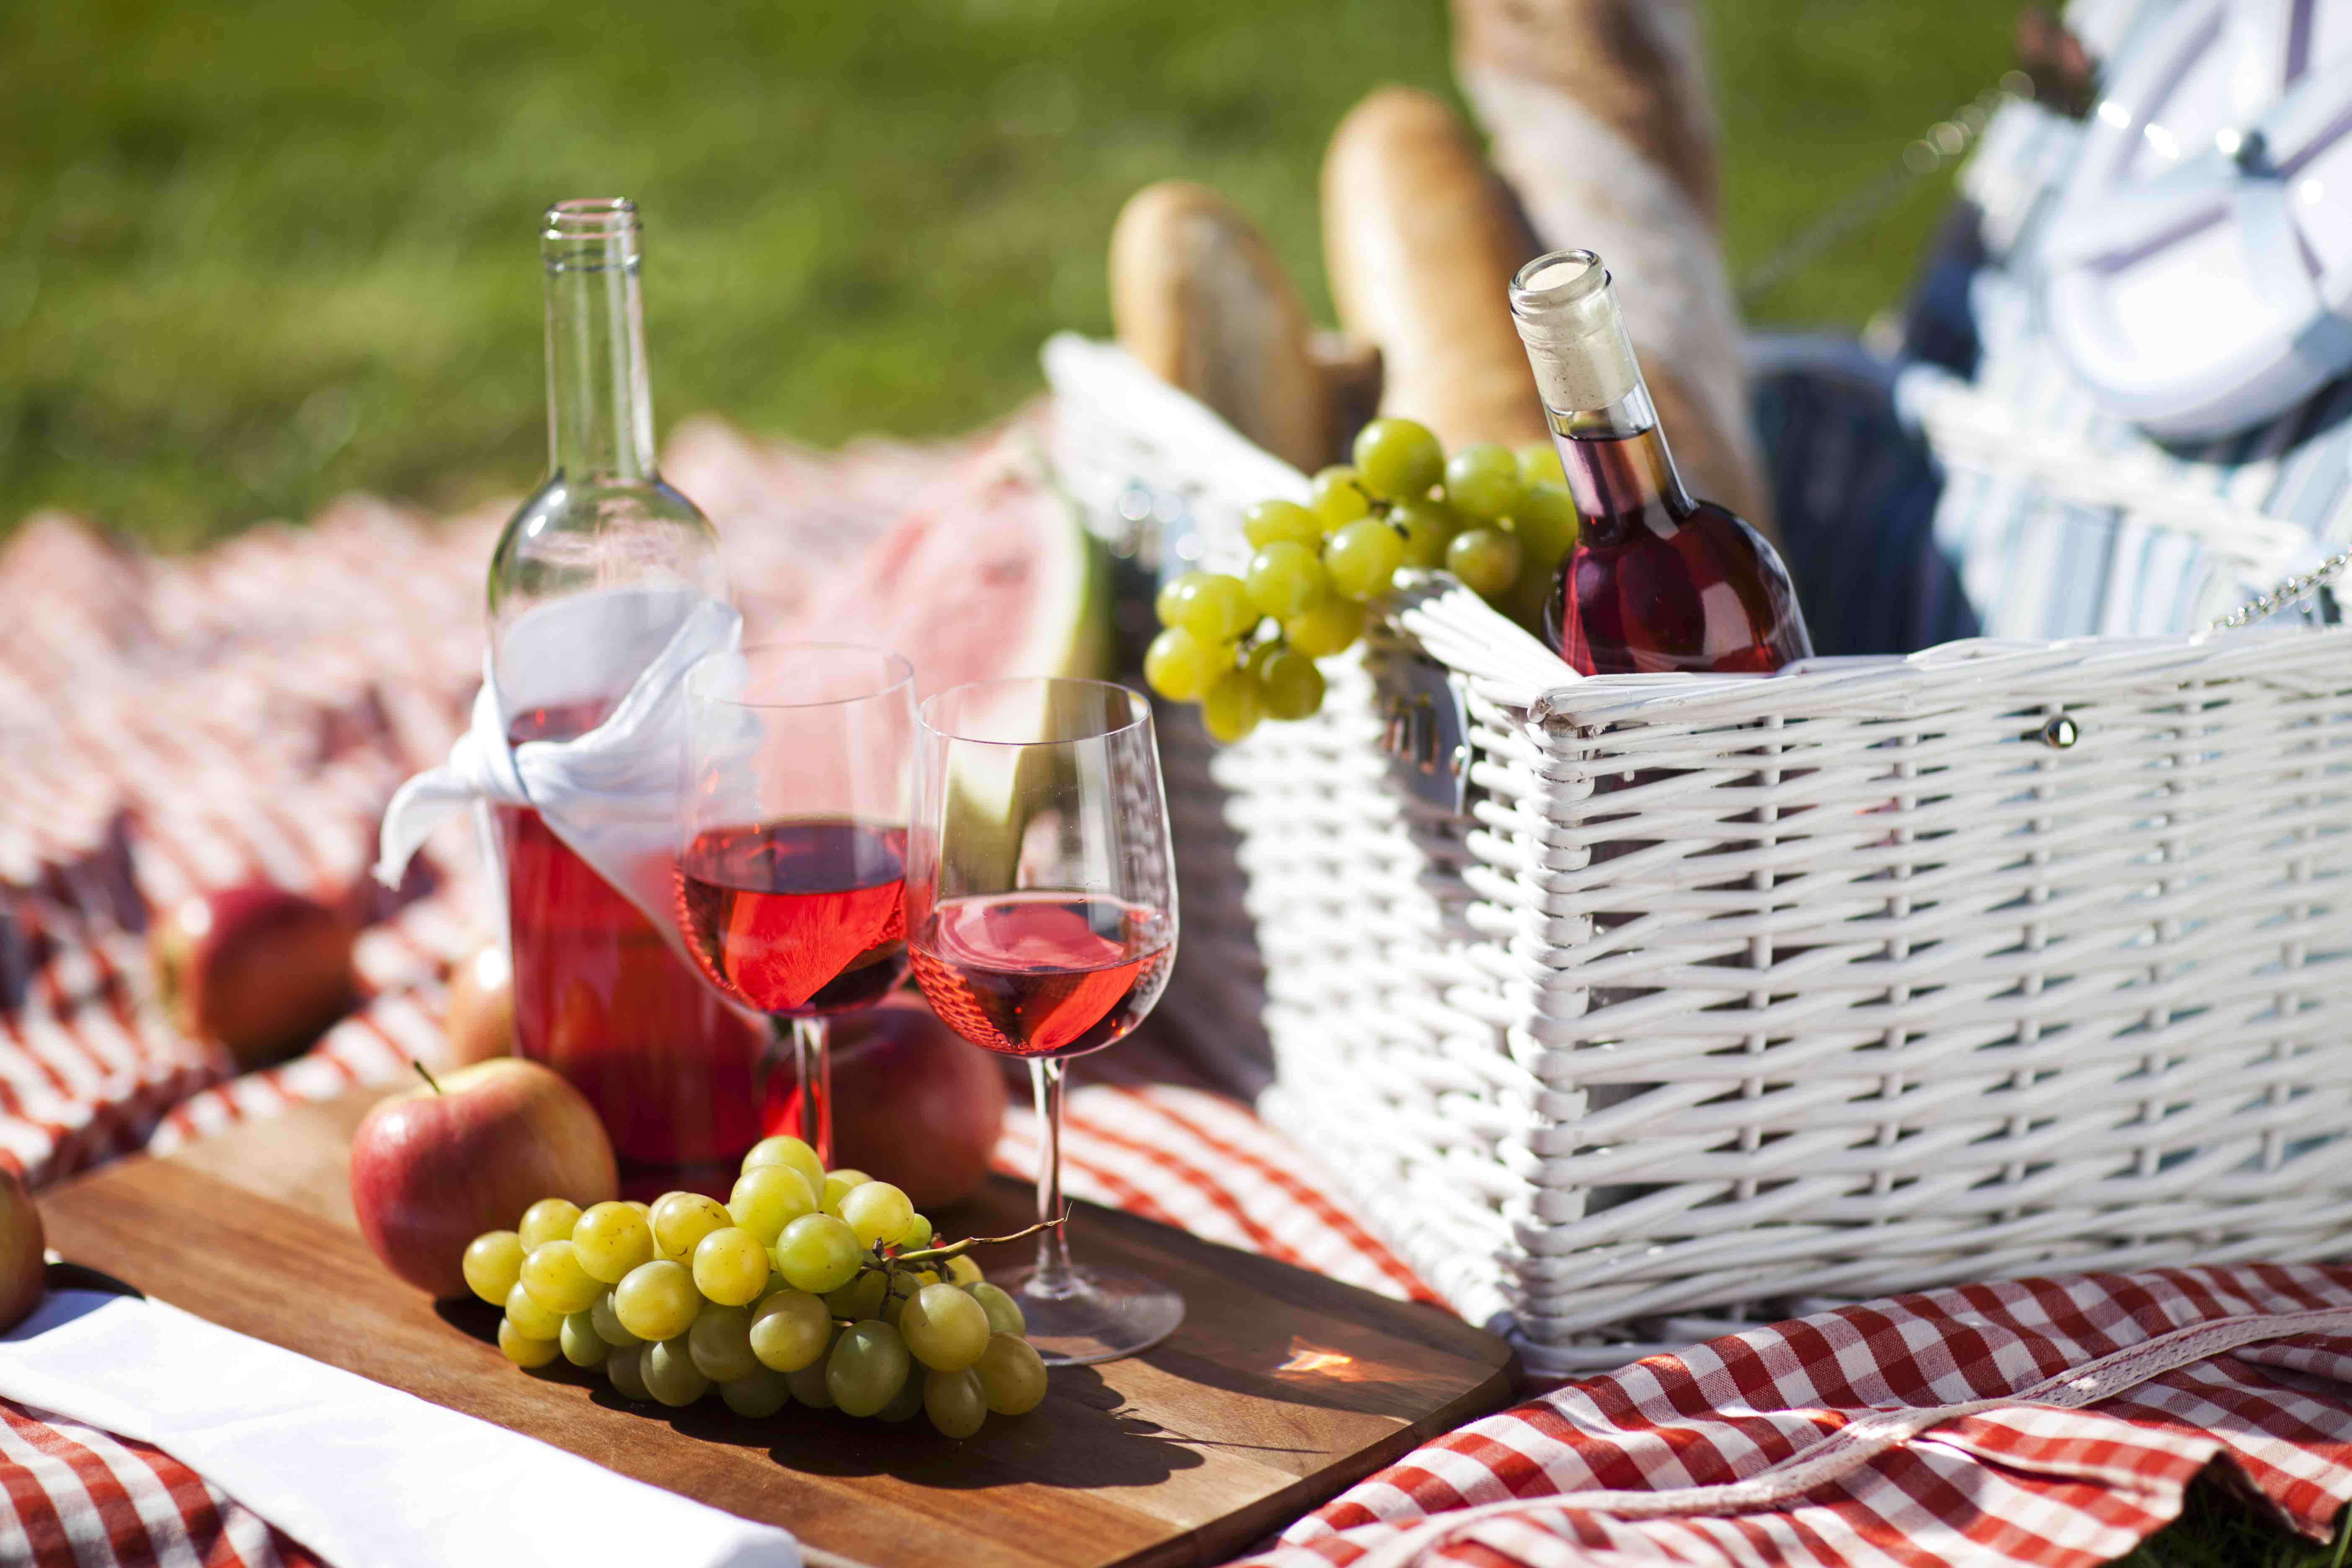 Rot-weiß karierte Picknickdecke auf der Wiese mit weißem Picknick-Korb, Baguettes, Weintrauben und Wein.